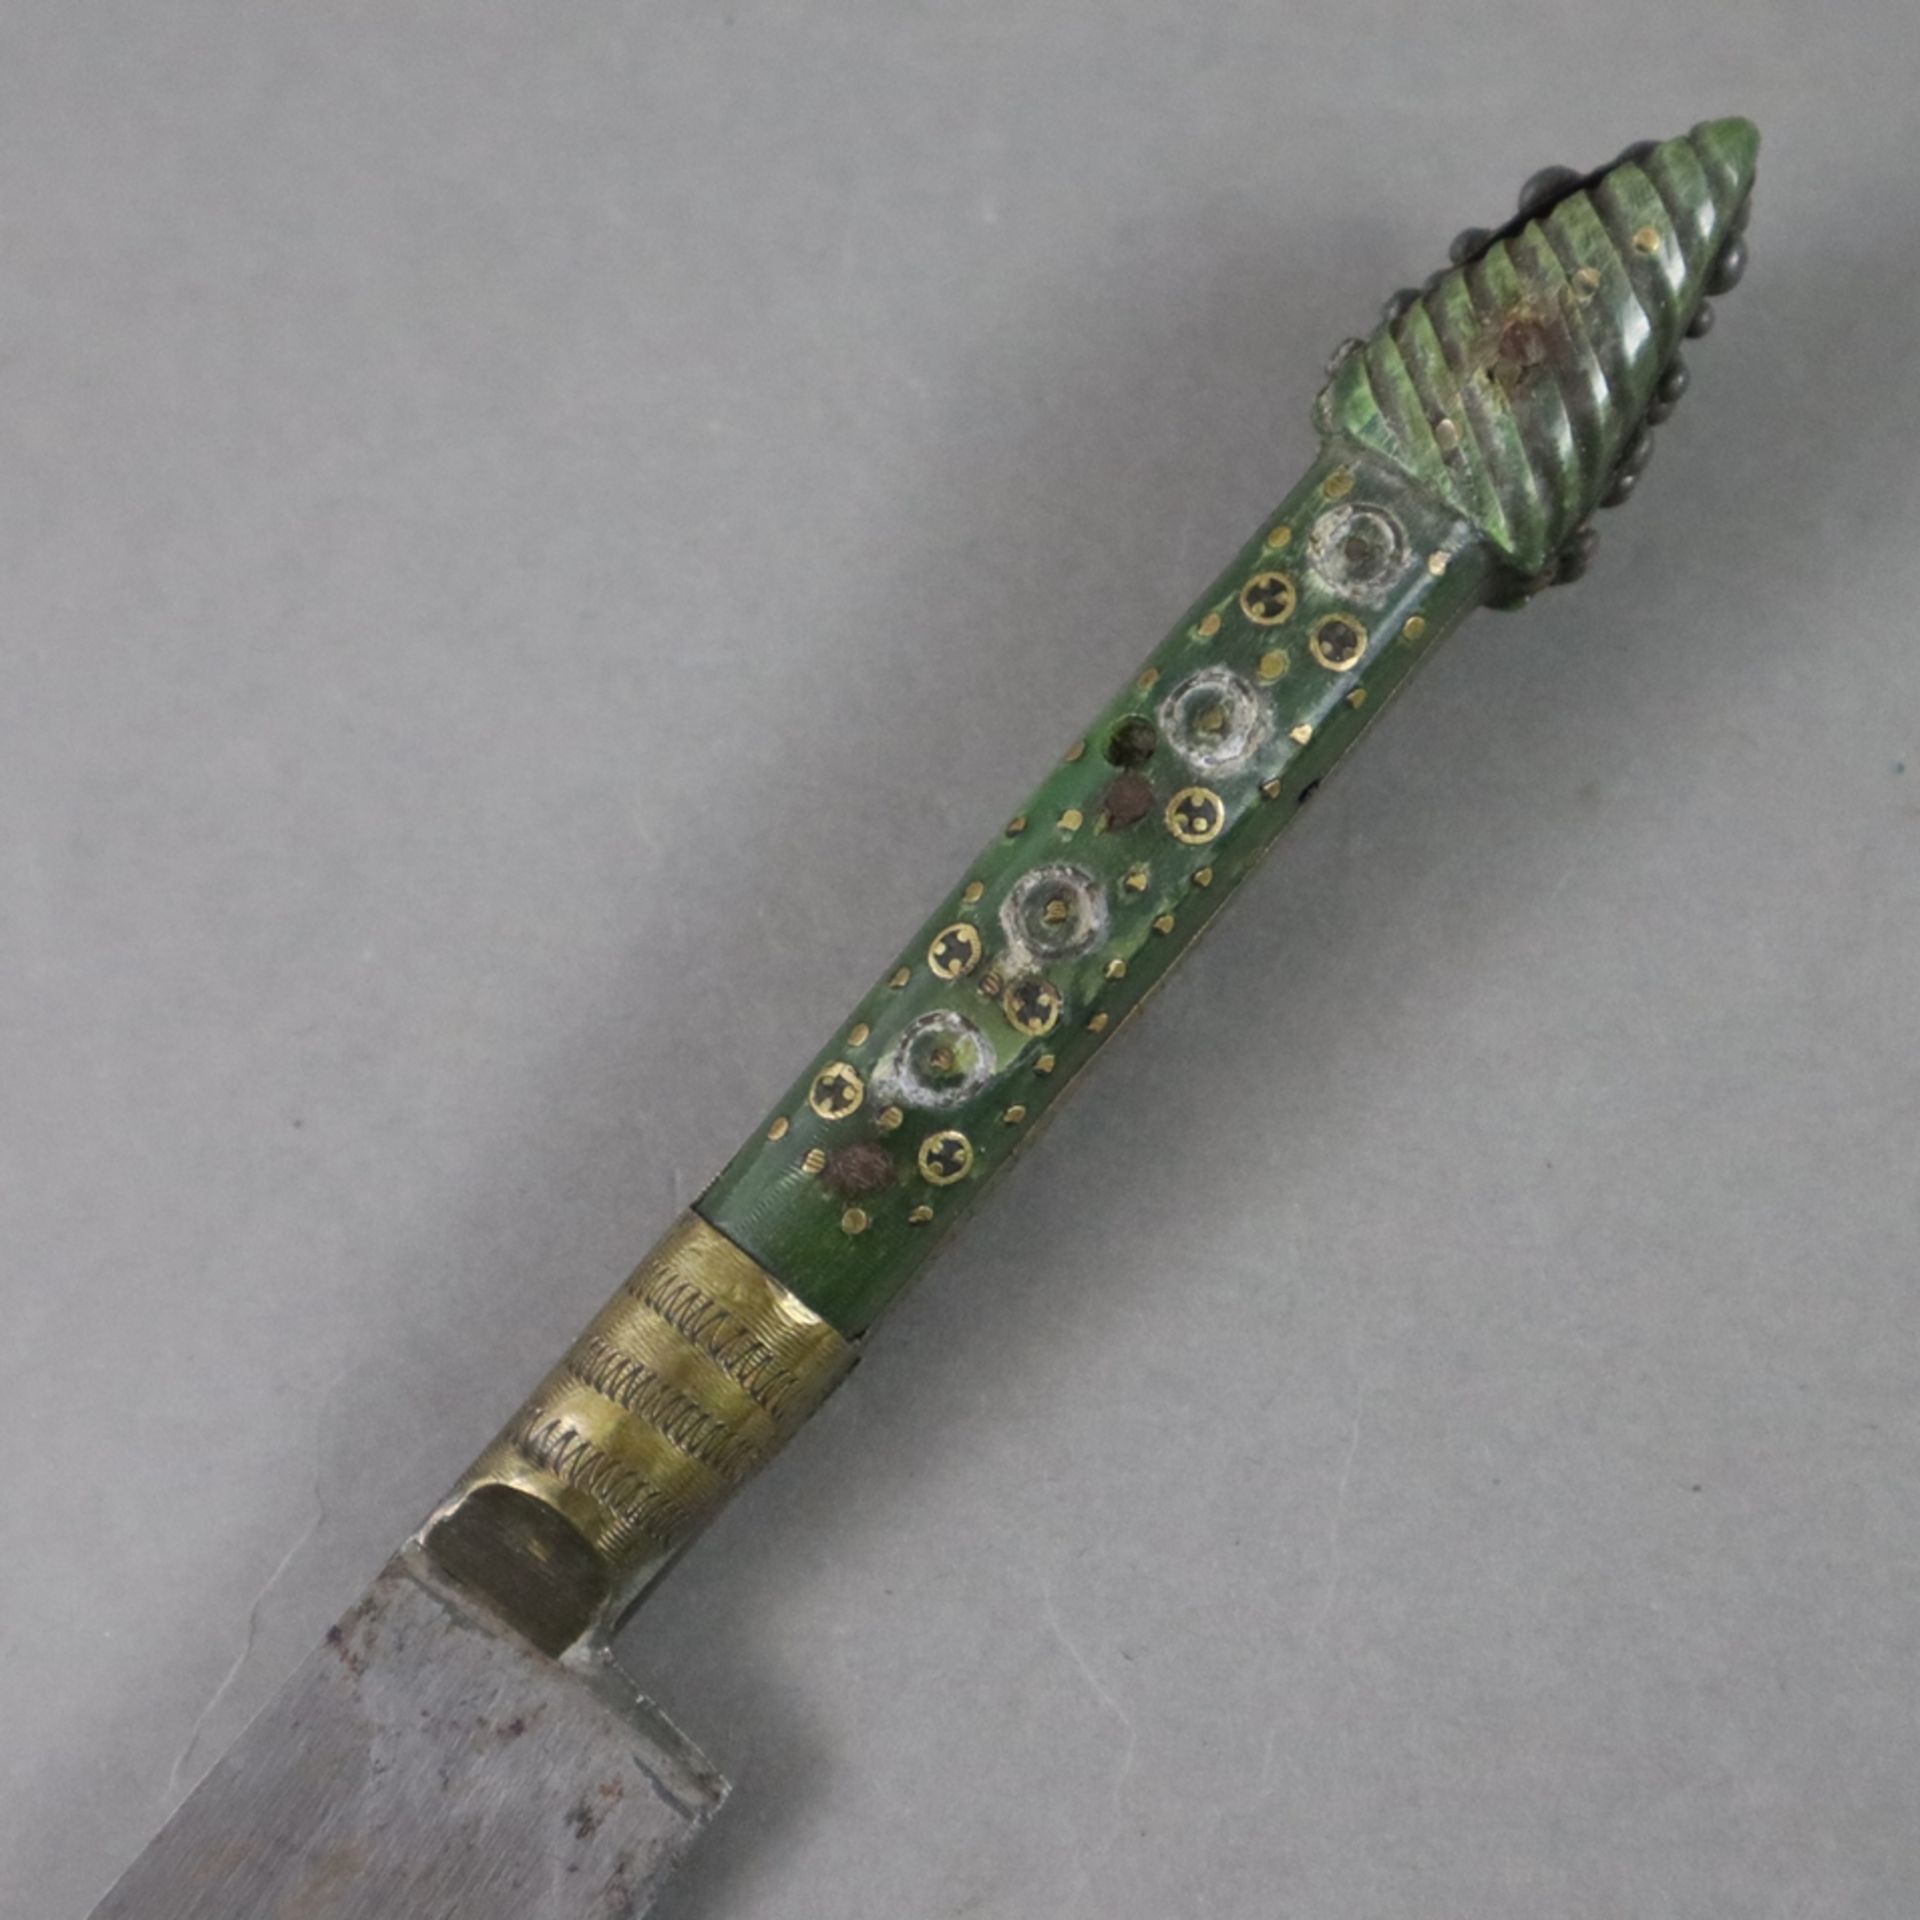 Dolch/Kard - osmanisch, feste Rückenklinge gemarkt, schmaler intarsierter Griff aus grüner Jade, ge - Image 2 of 5